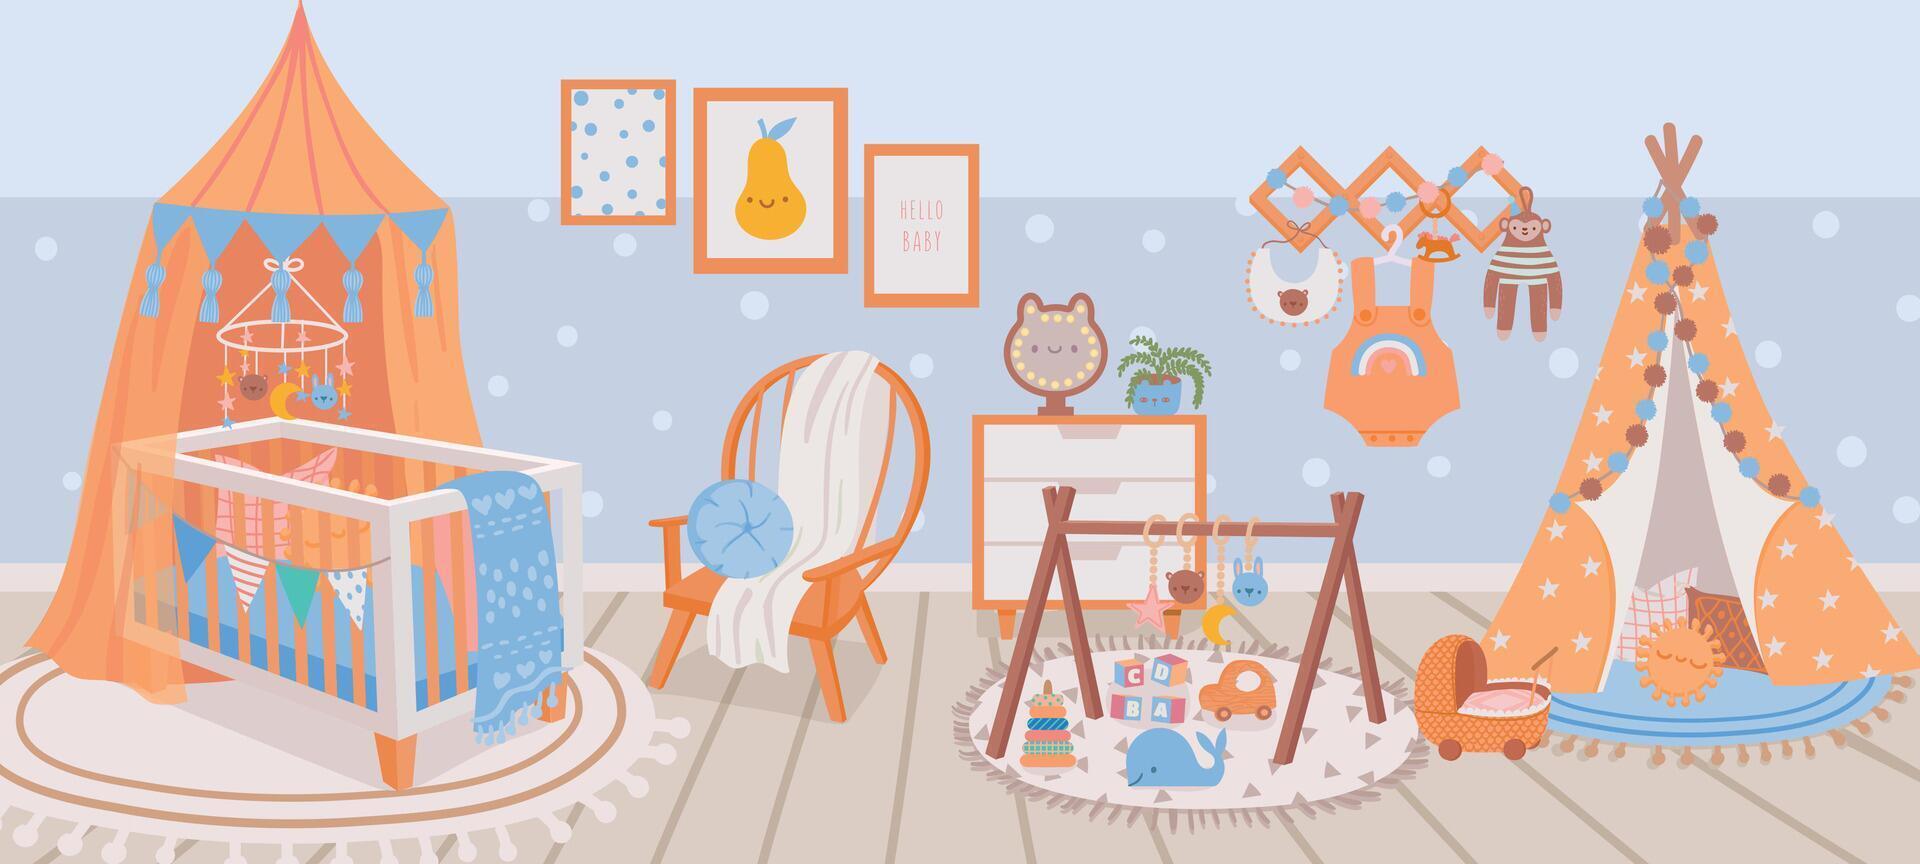 Kindergarten Innere. Baby Zimmer mit Krippe Bett, Sessel, Teppich, Spielzeug und Wigwam. Karikatur Kinder Schlafzimmer mit Möbel und Dekoration Vektor Szene